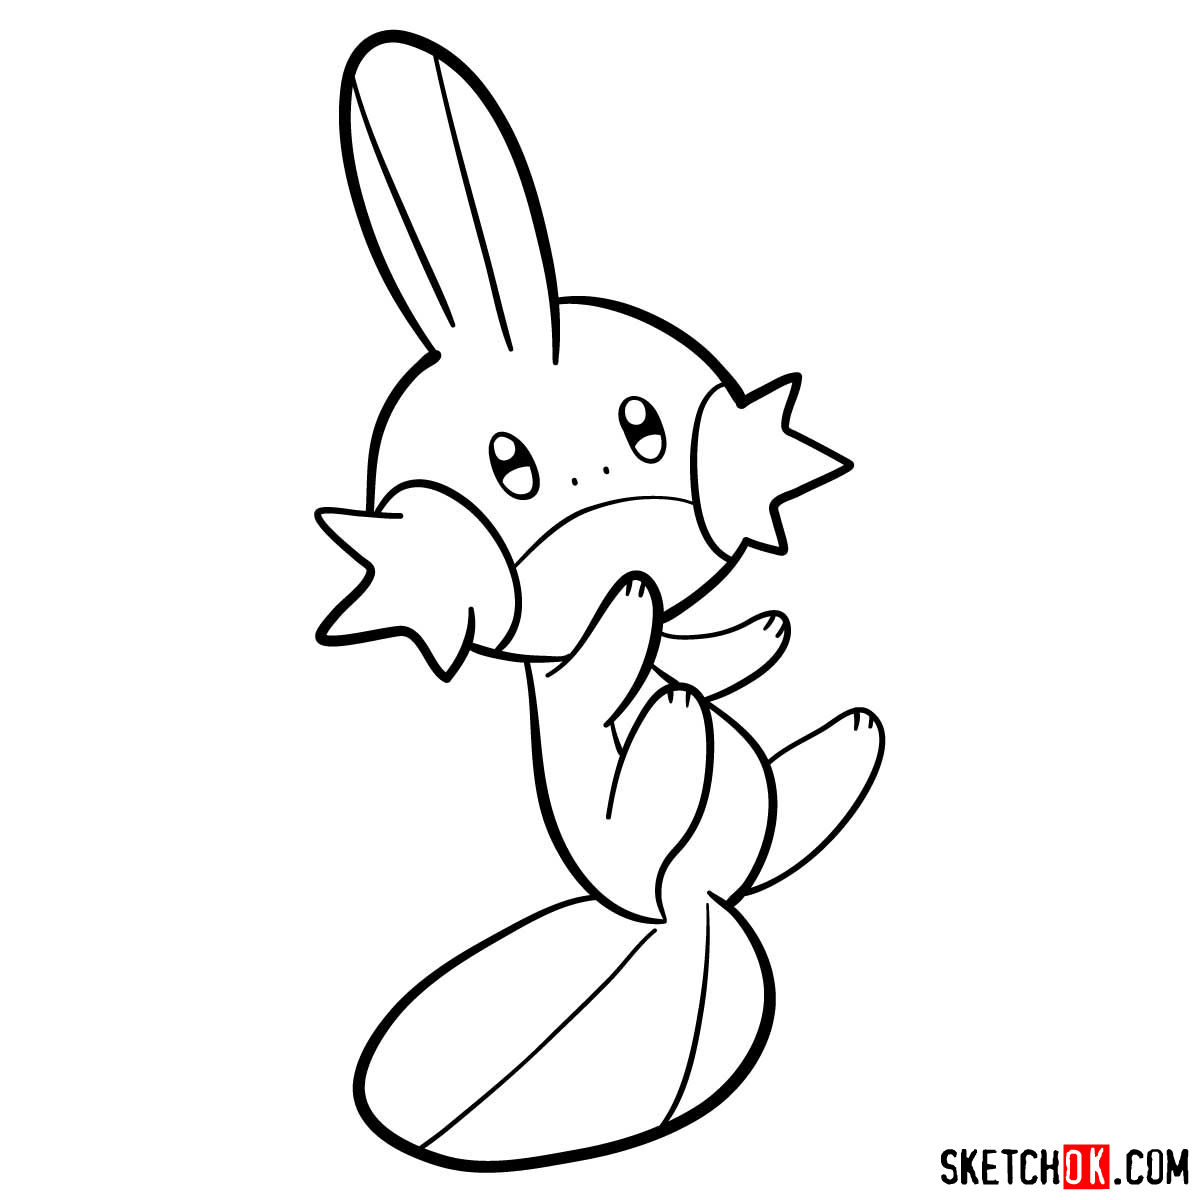 How to draw Mudkip pokemon - step 09